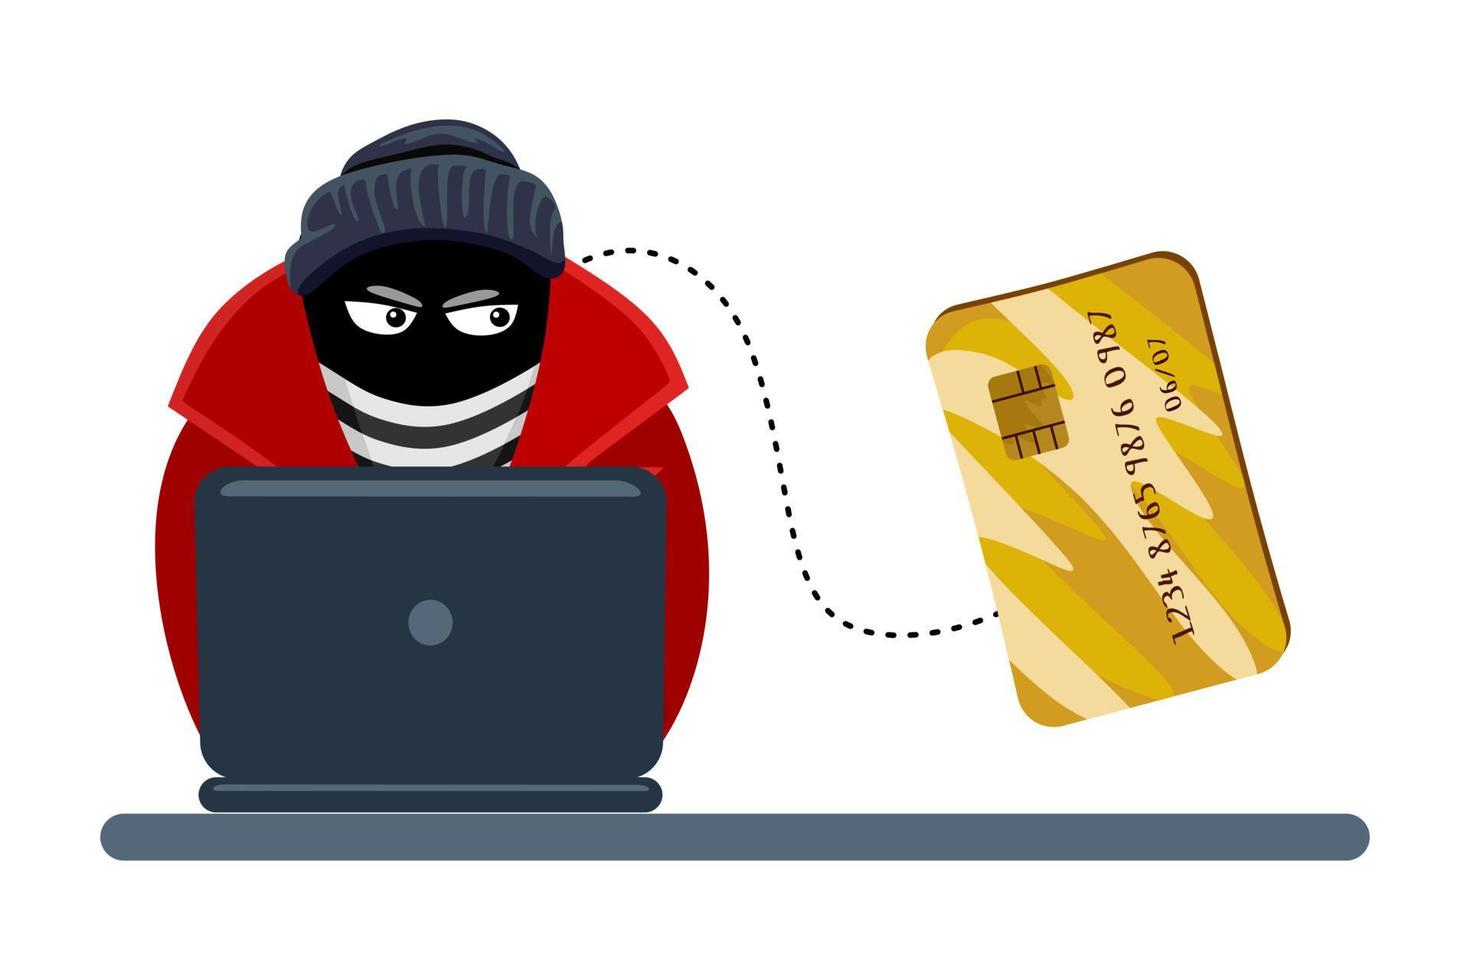 fraude en línea. un criminal, un ladrón con una máscara negra roba información personal de una computadora. el concepto de actividad de Internet o piratería de seguridad. ilustración vectorial de dibujos animados. vector